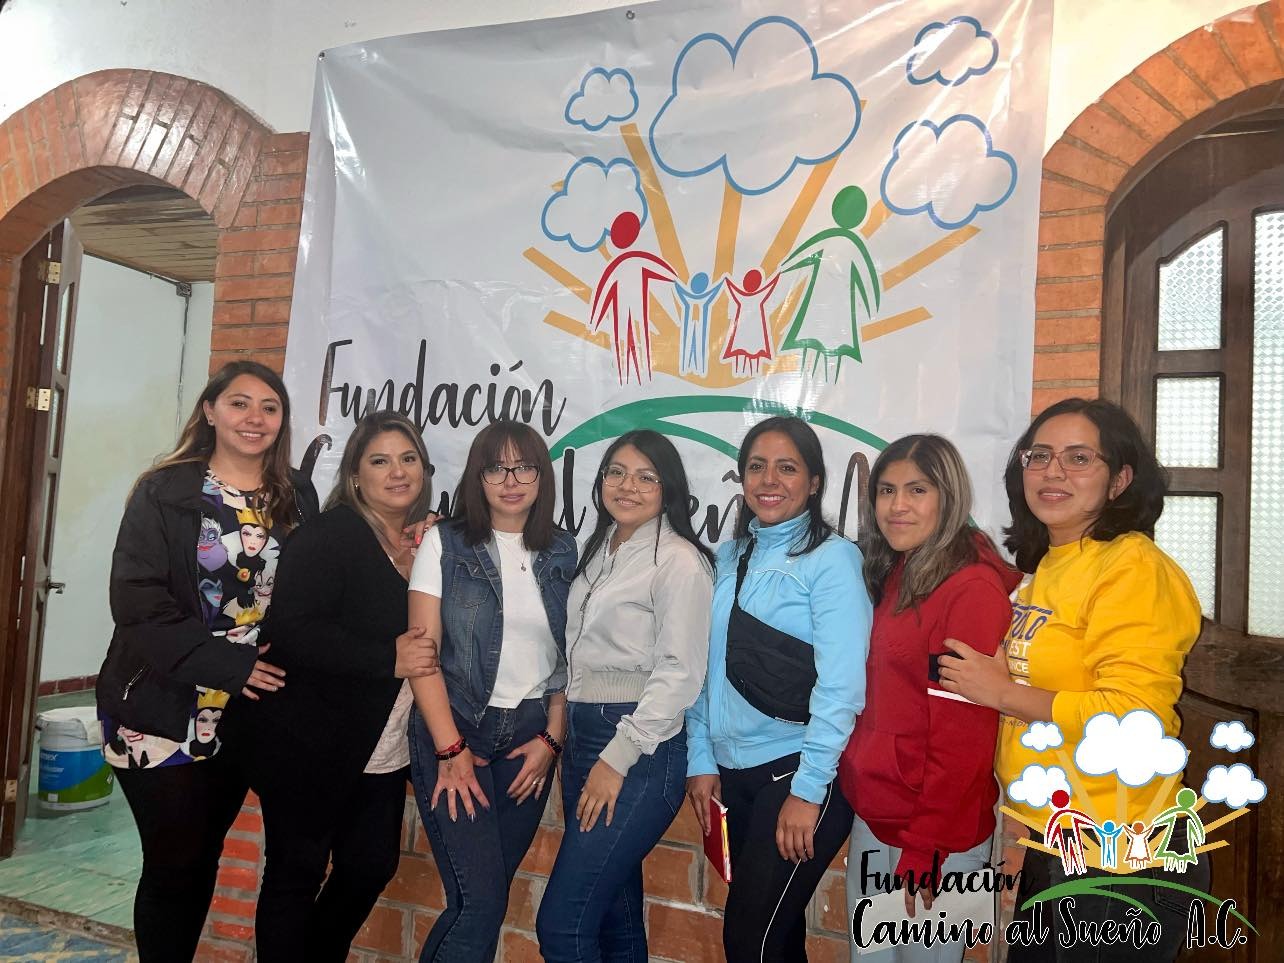 La Fundación Camino al Sueño A.C. anunció sus próximas actividades que realizarán en San Cristóbal de Las Casas